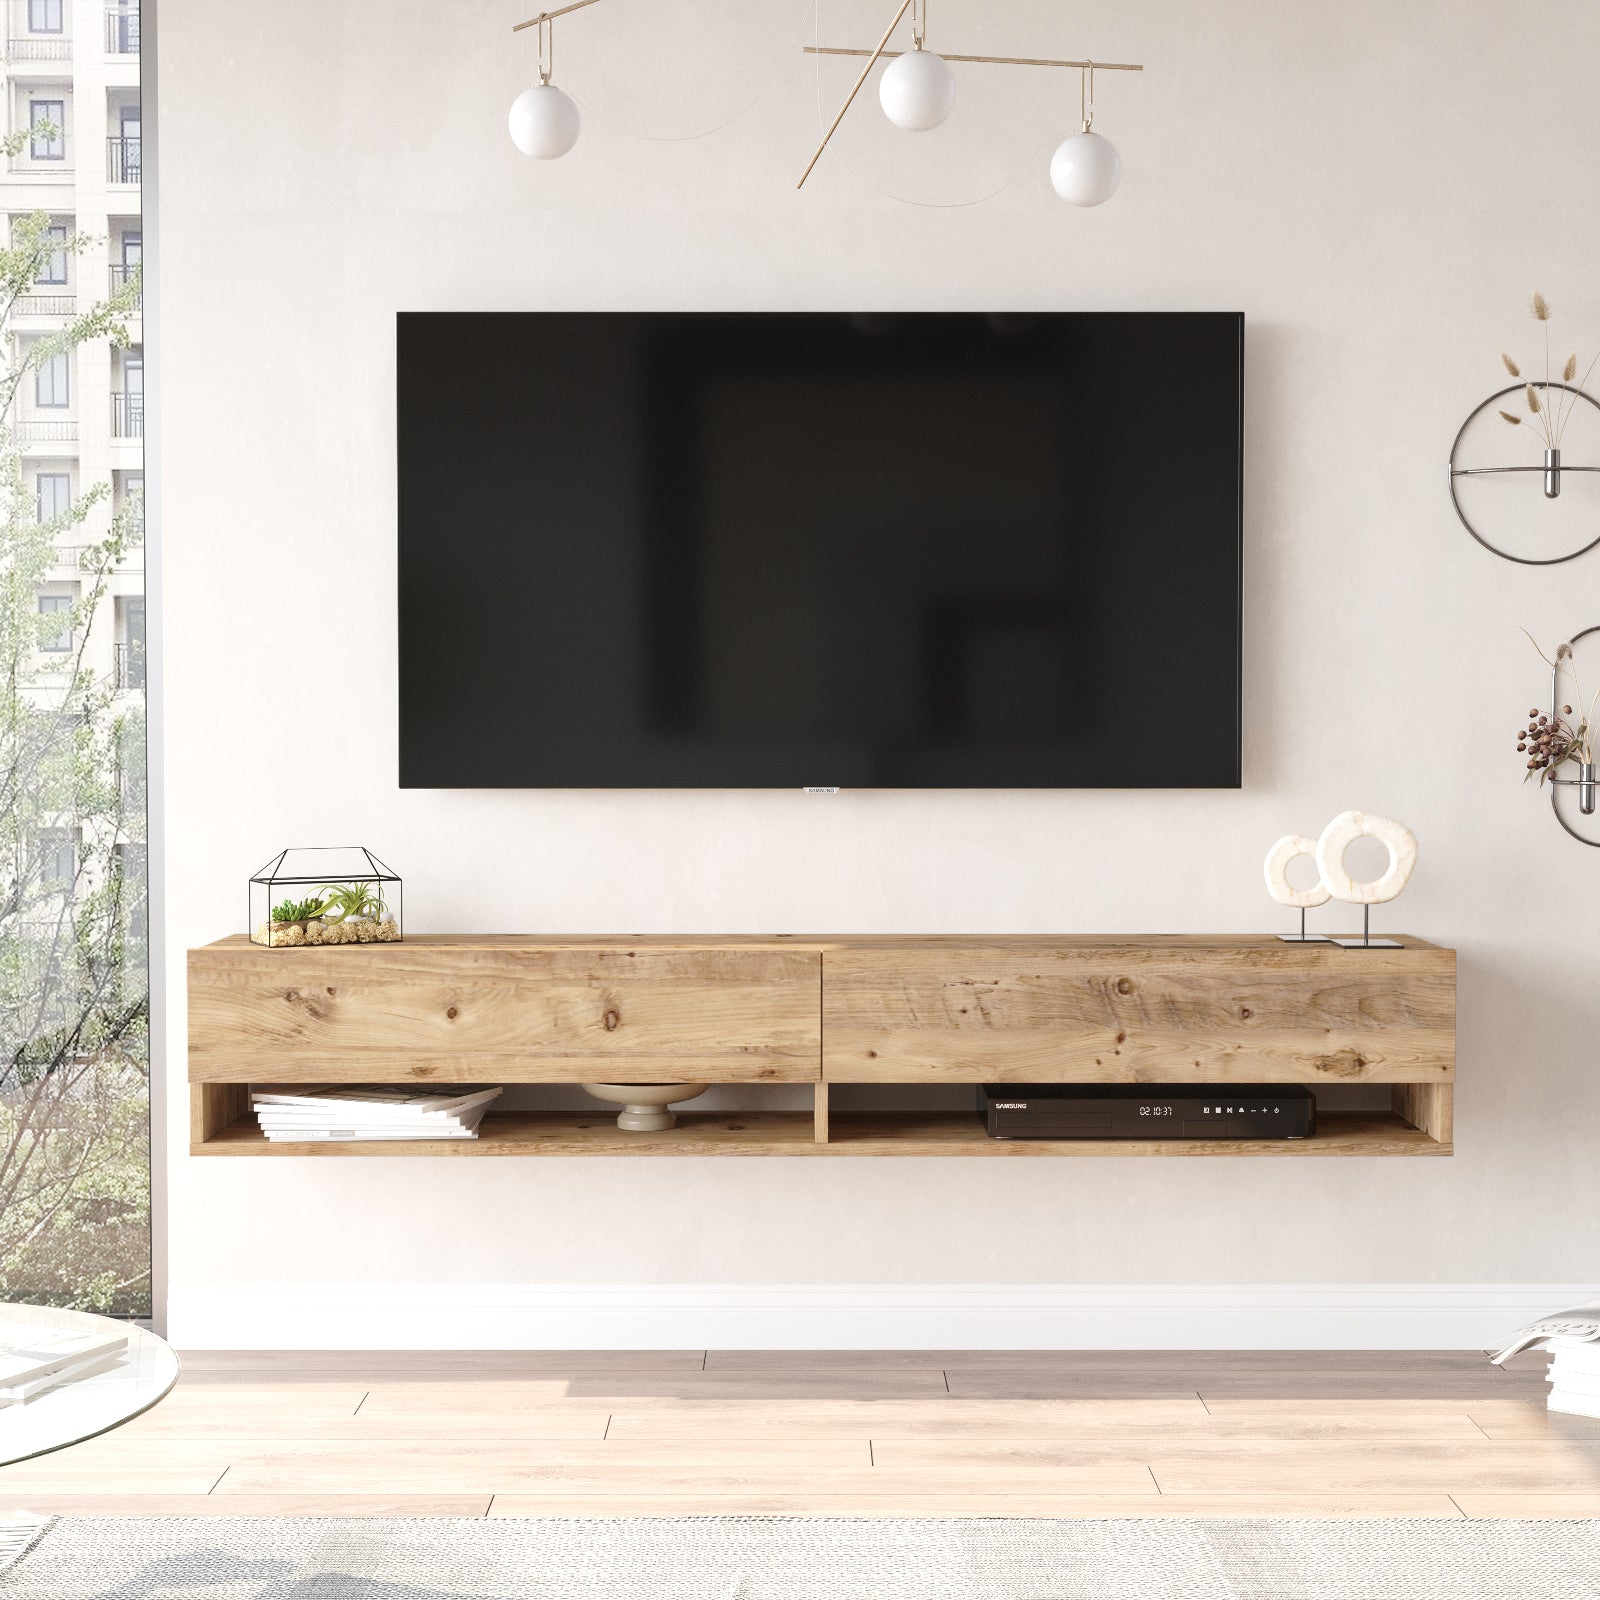 Bois clair-Meuble TV suspendu FABLE design moderne en bois naturel sous écran plat dans un salon lumineux.